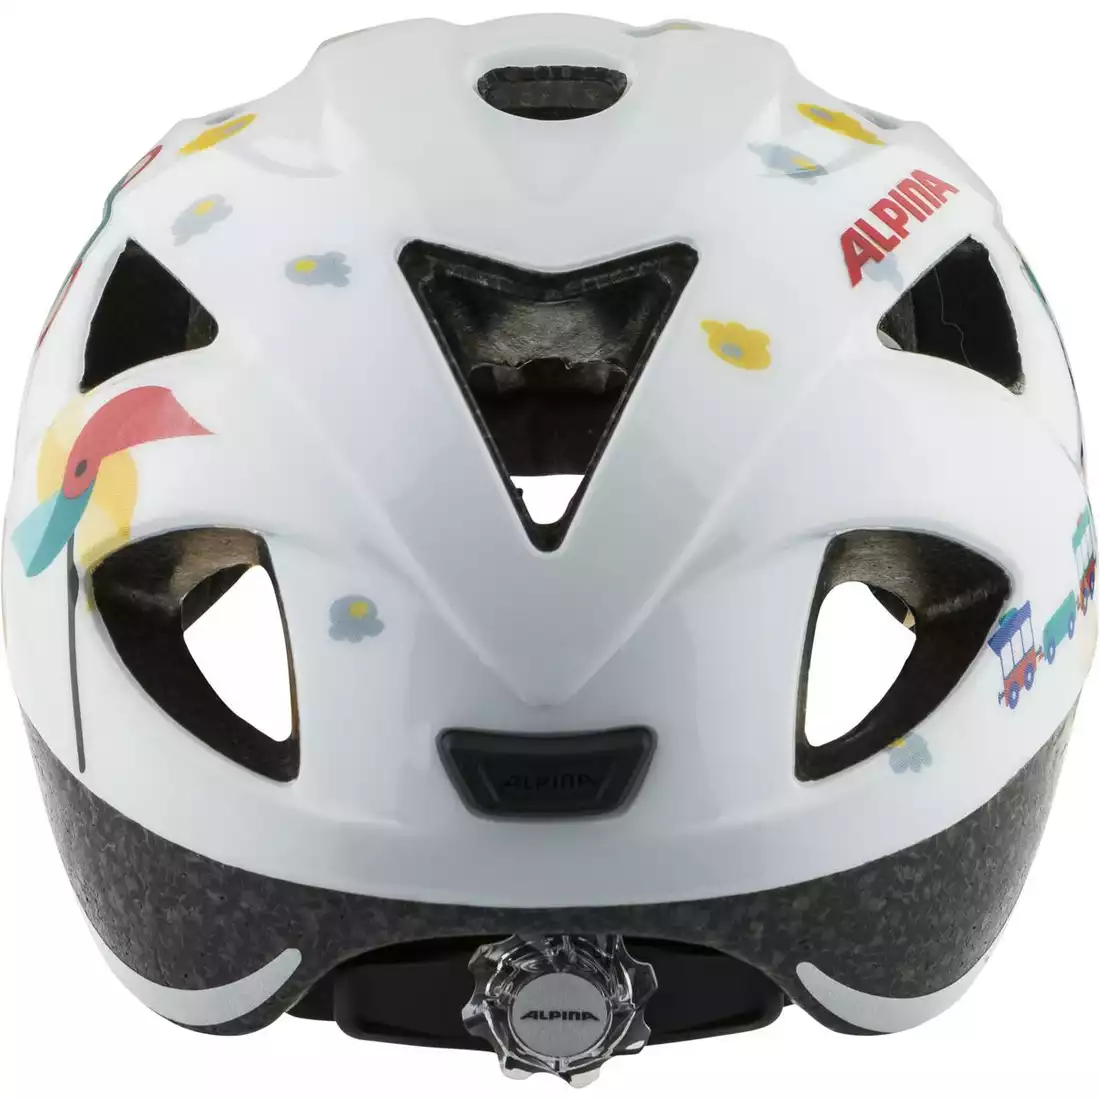 ALPINA XIMO Children's bicycle helmet, white bear gloss